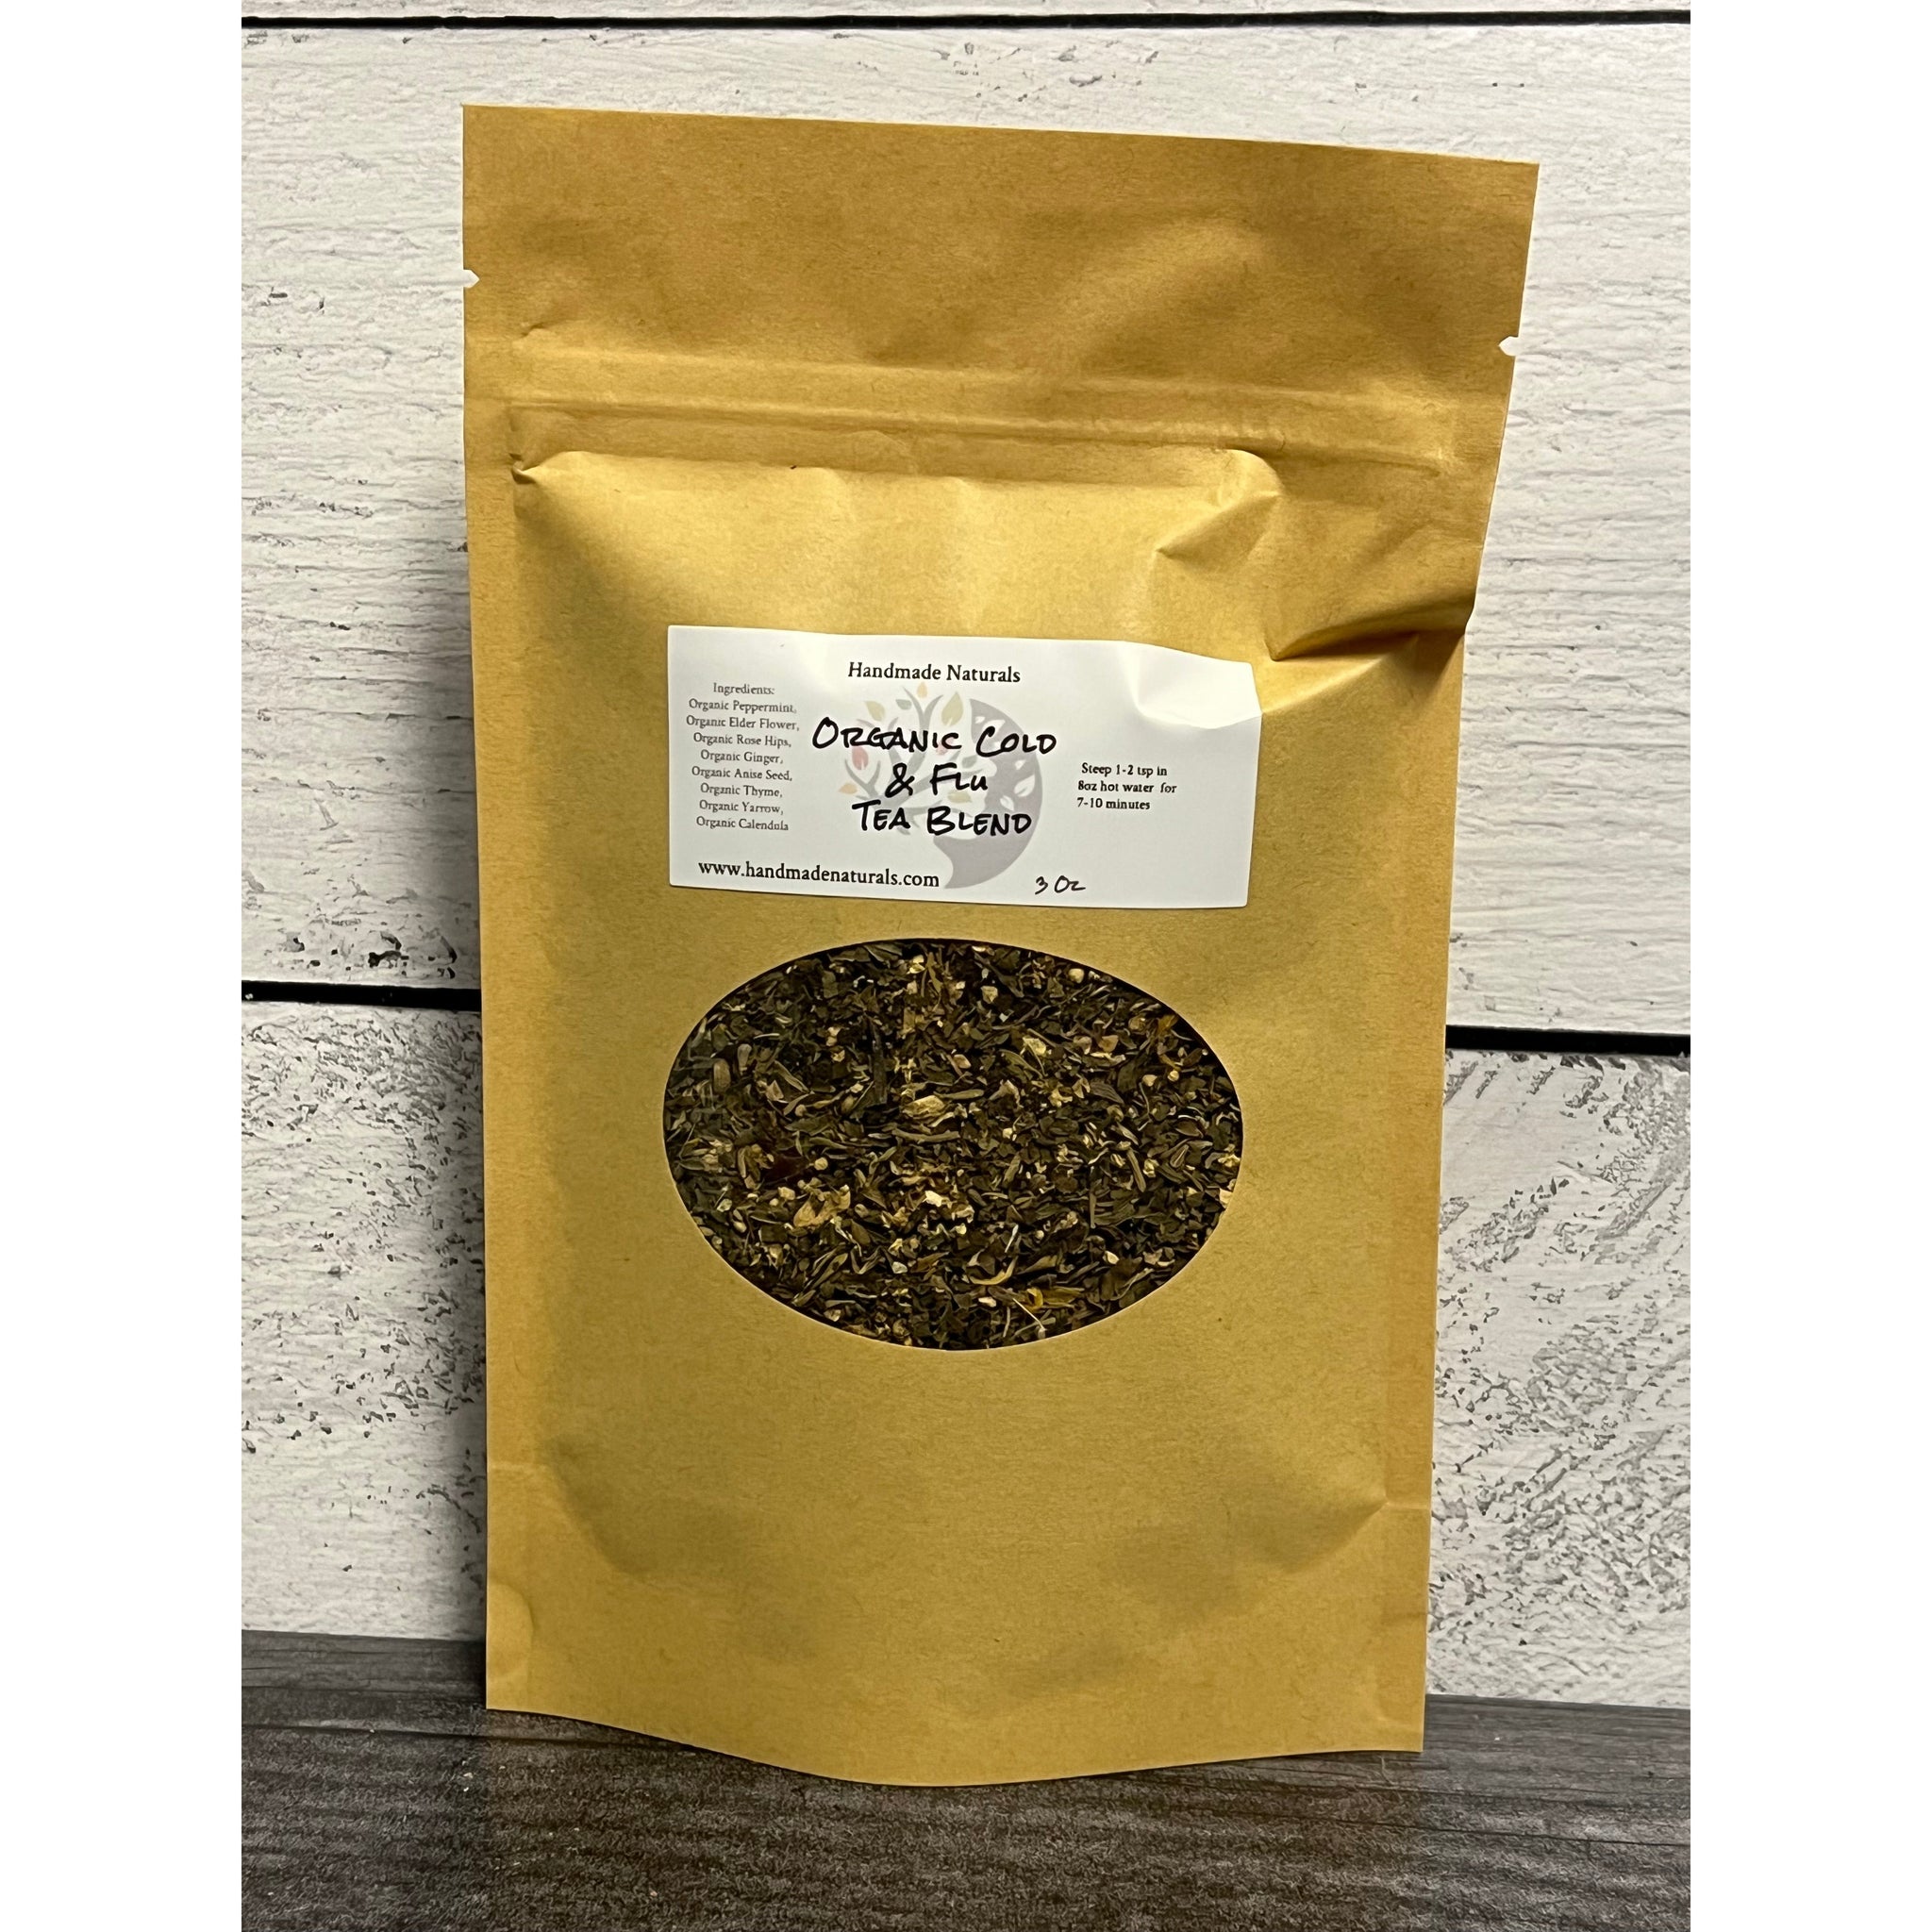 Organic Cold & Flu Tea Blend – Handmade Naturals Inc